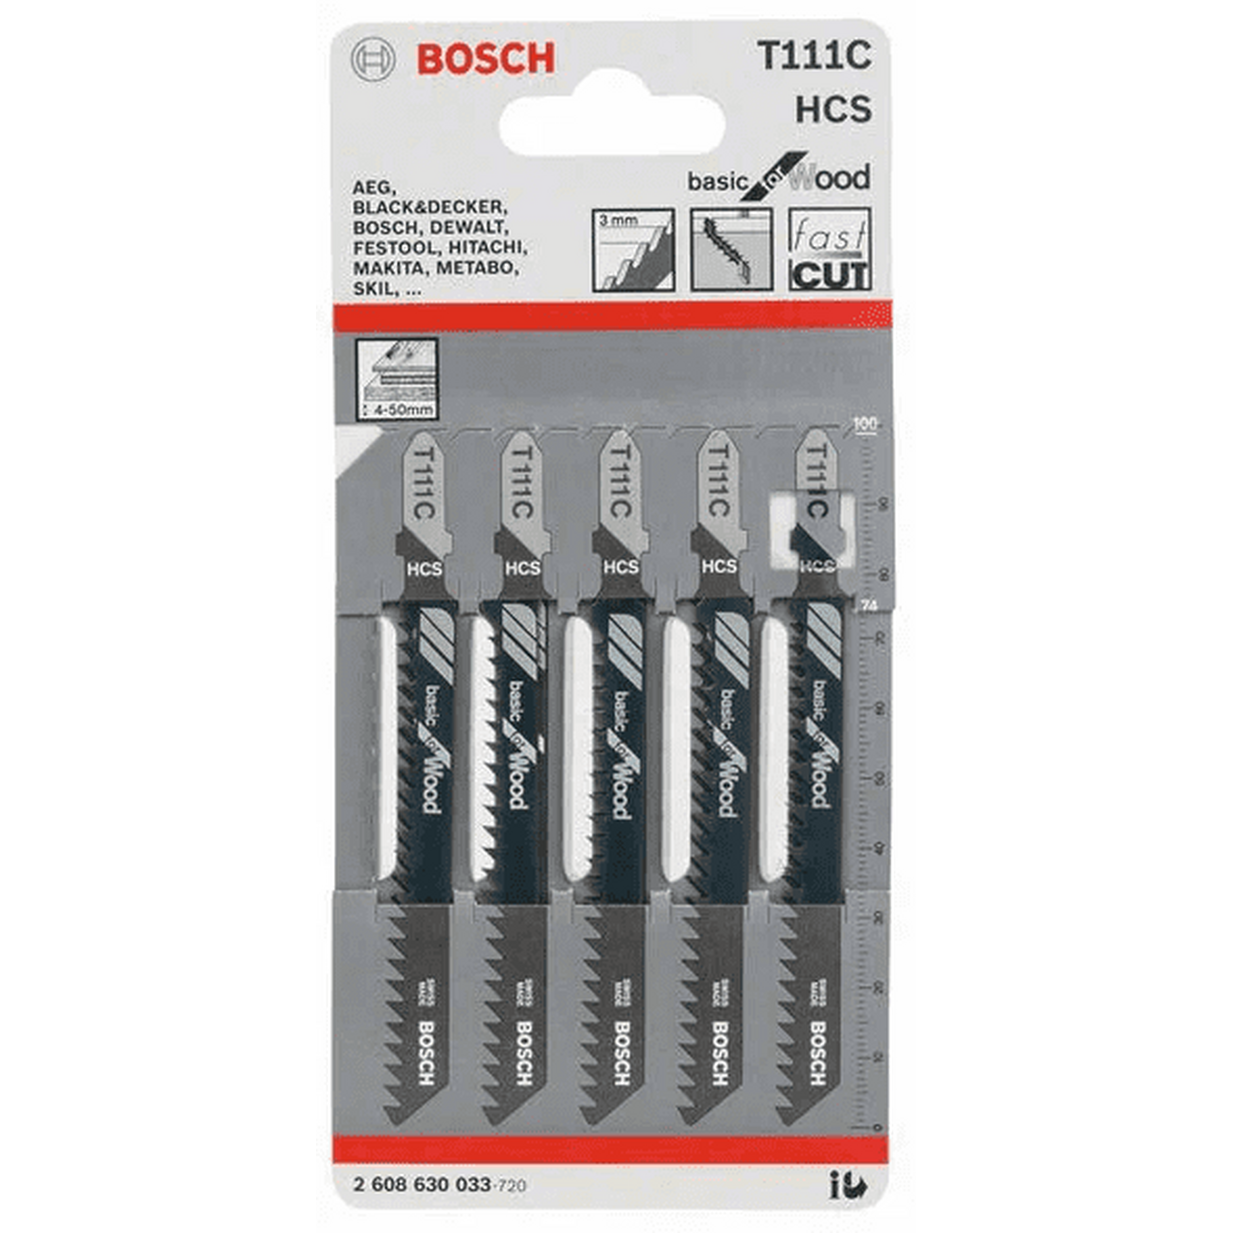 Пилки для лобзика Bosch Т111C (5шт) 2608630033